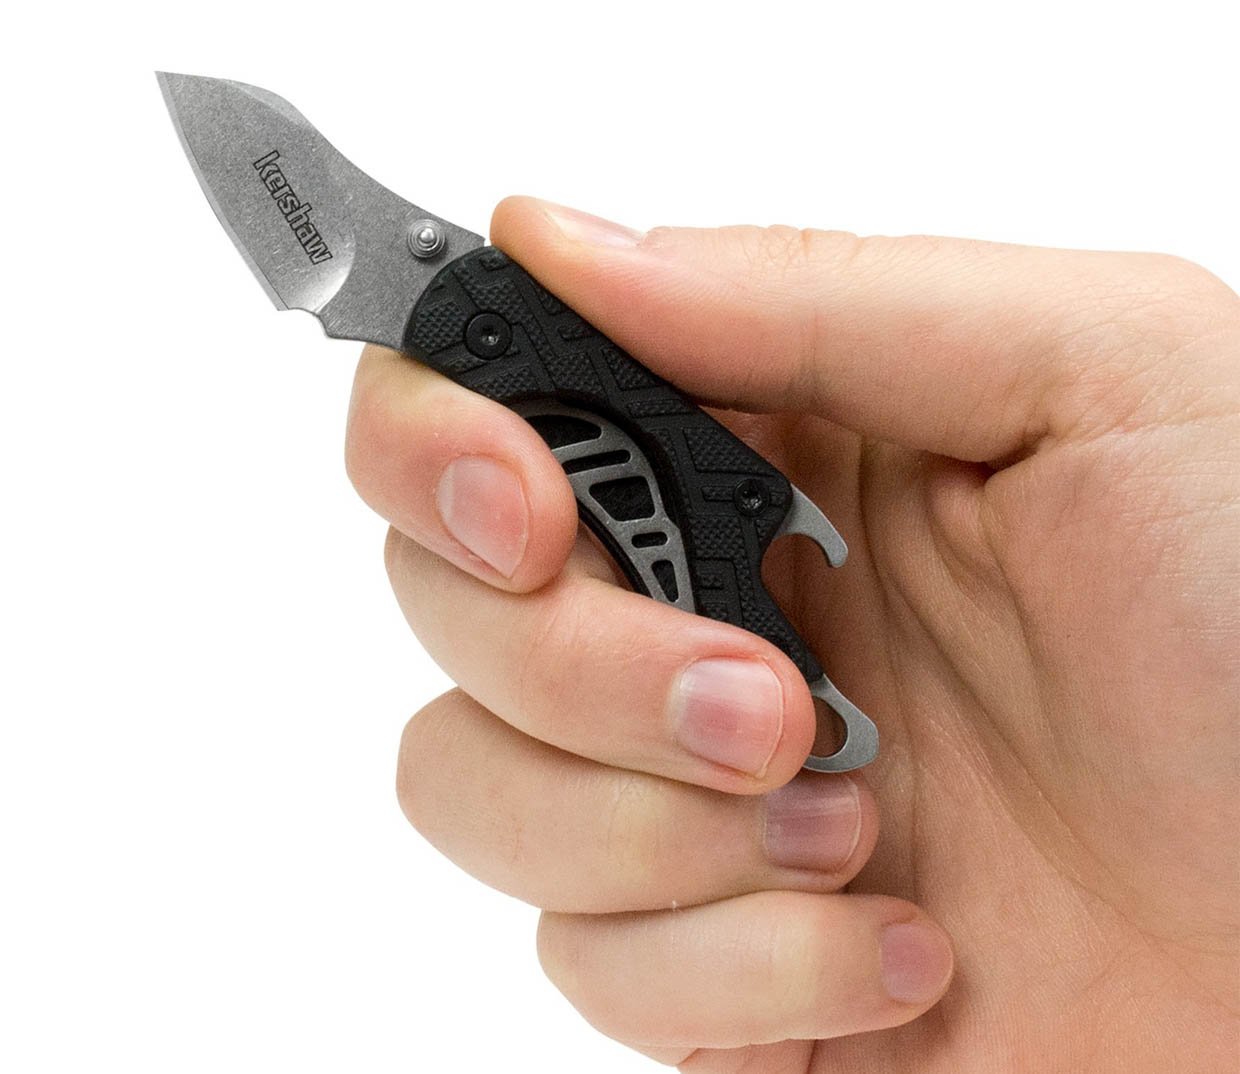 Kershaw Cinder Pocket Knife